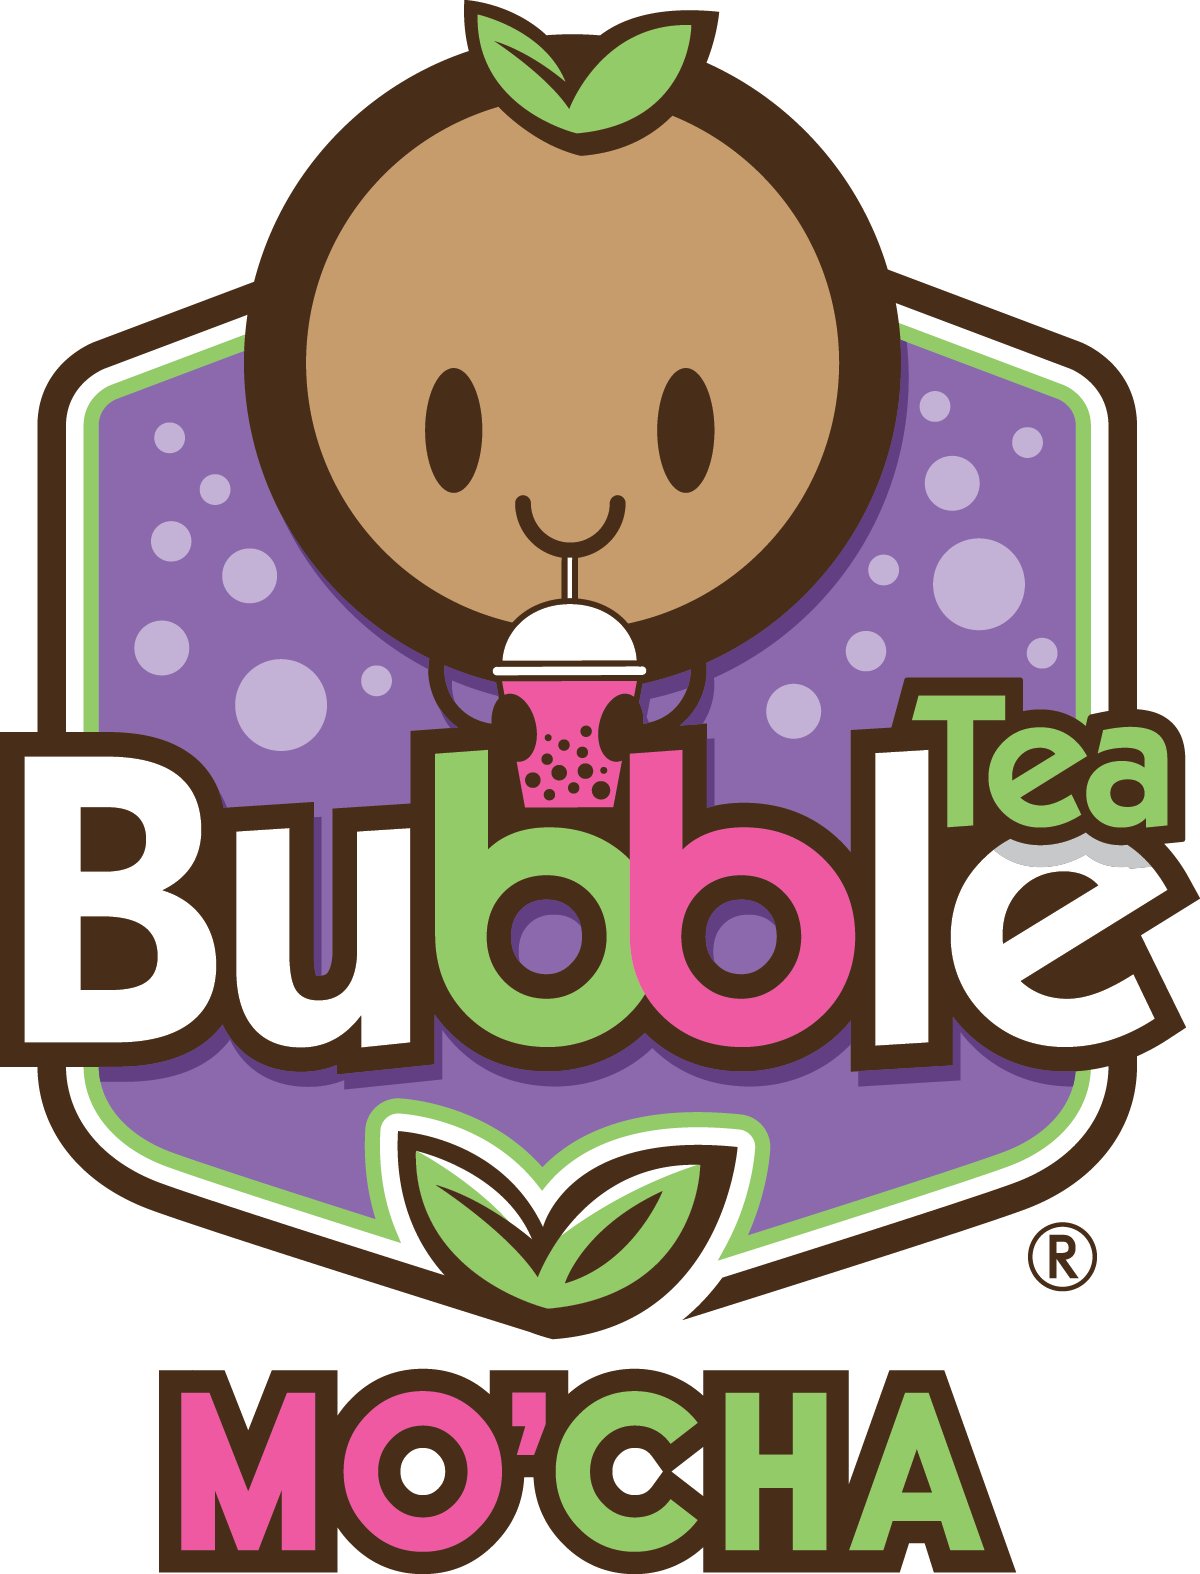 Mo'cha Bubble Tea